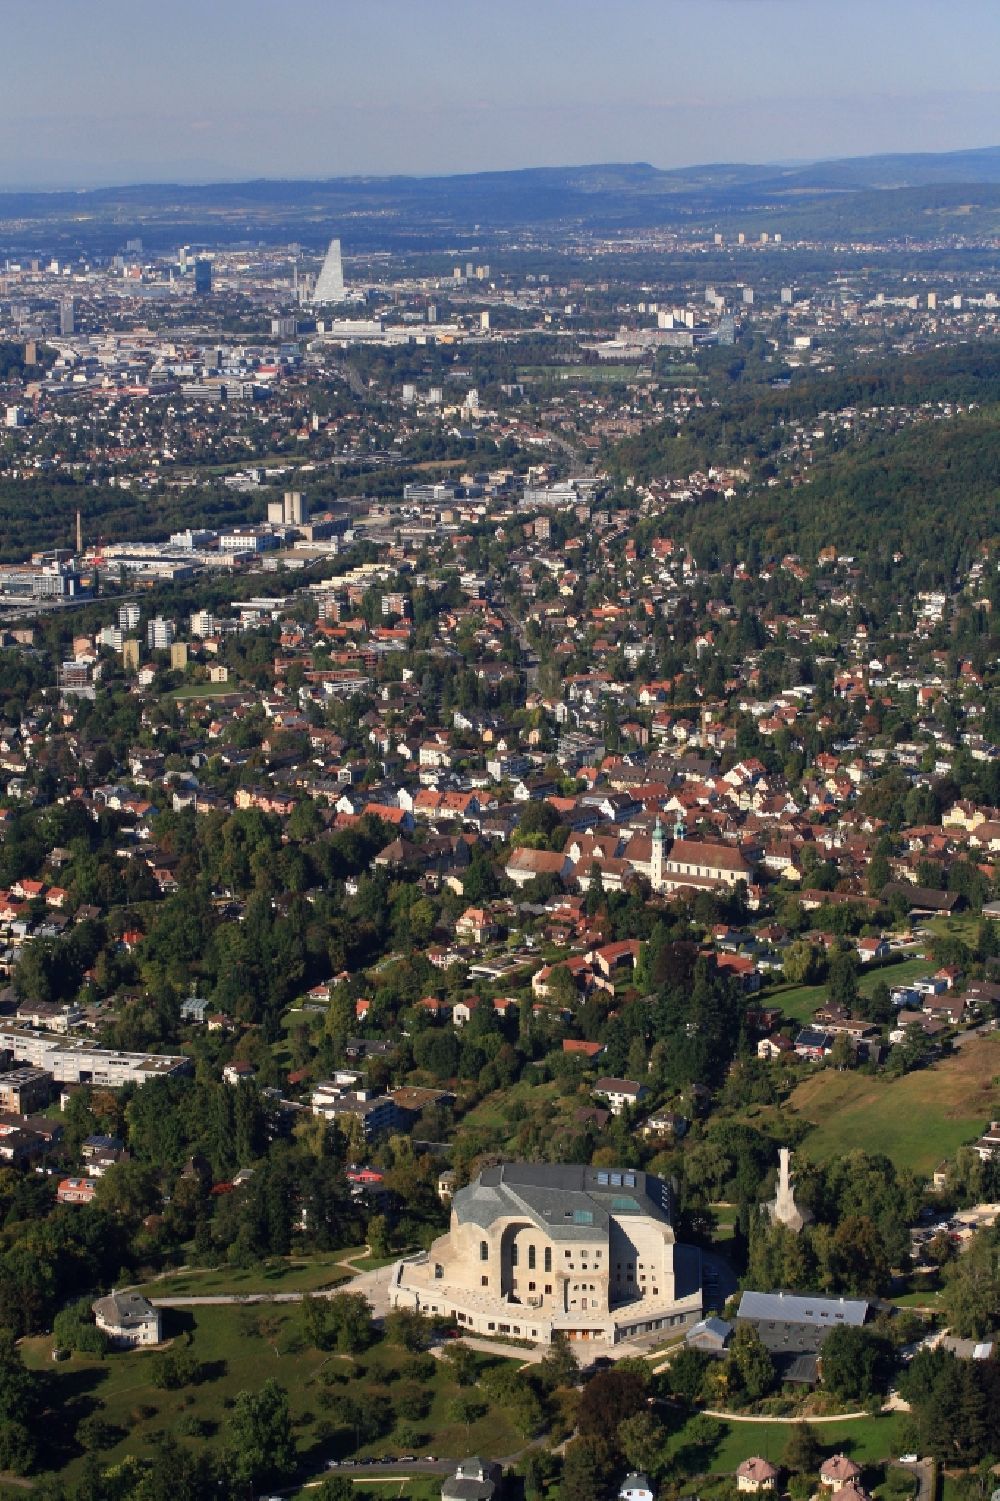 Luftbild Dornach - Stadtbereich und Goetheanum in Dornach in der Schweiz, Kanton Solothurn